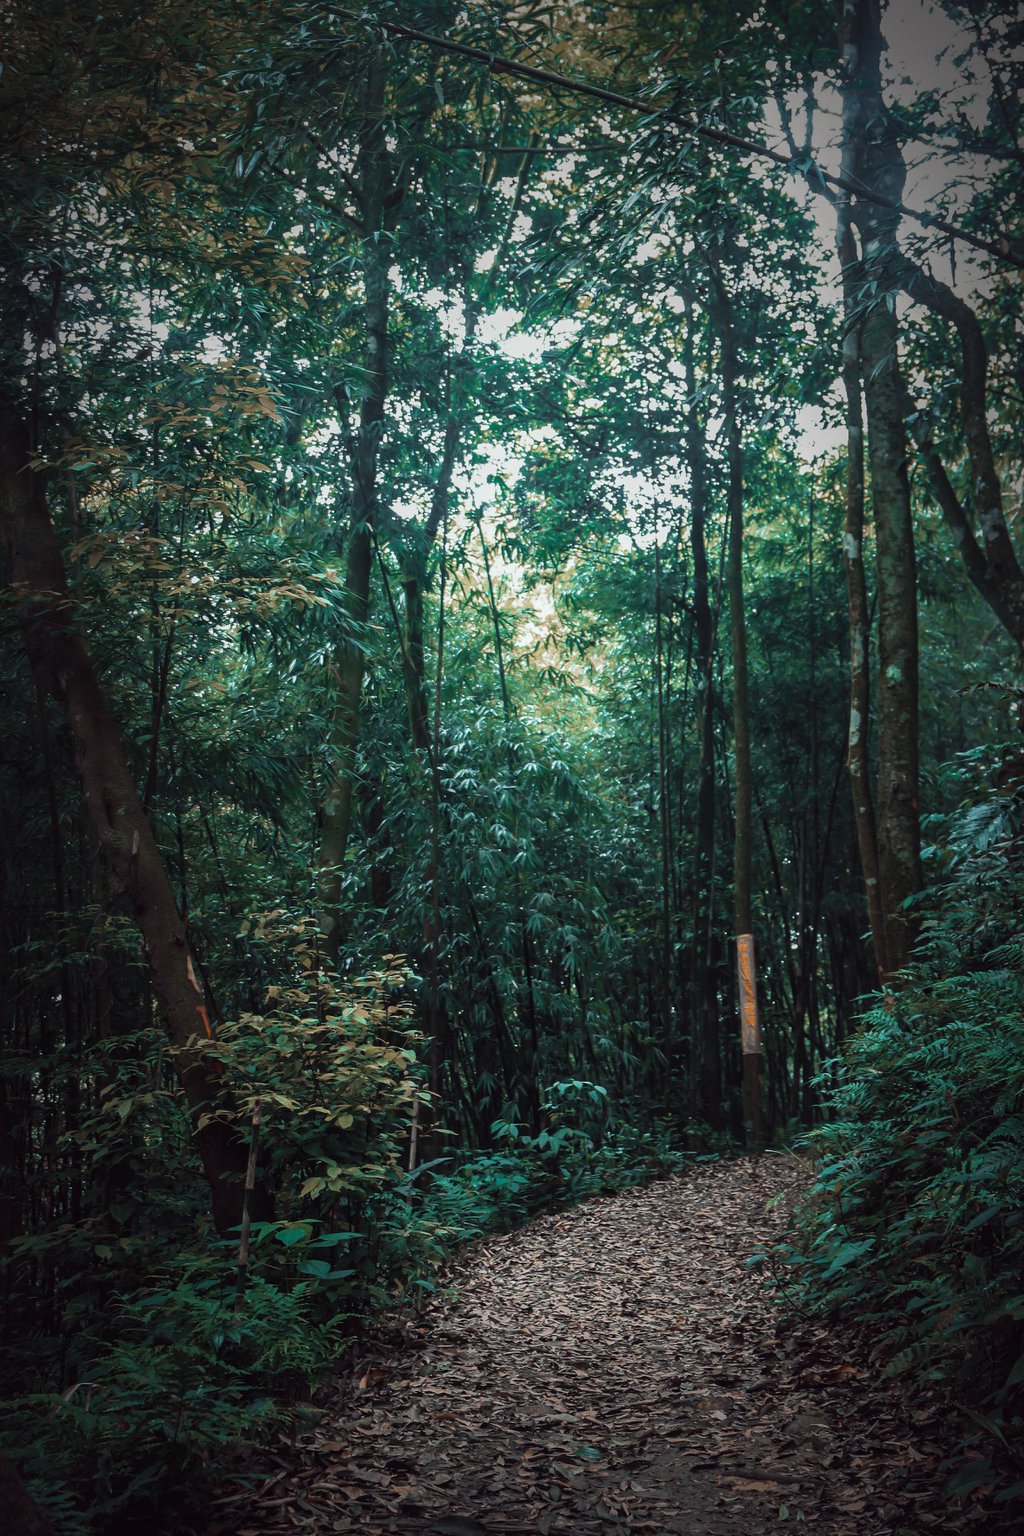 Khu rừng này ở Tam Đảo của Vĩnh Phúc đẹp như phim, cây cổ thụ la liệt, người ta đang lên xem